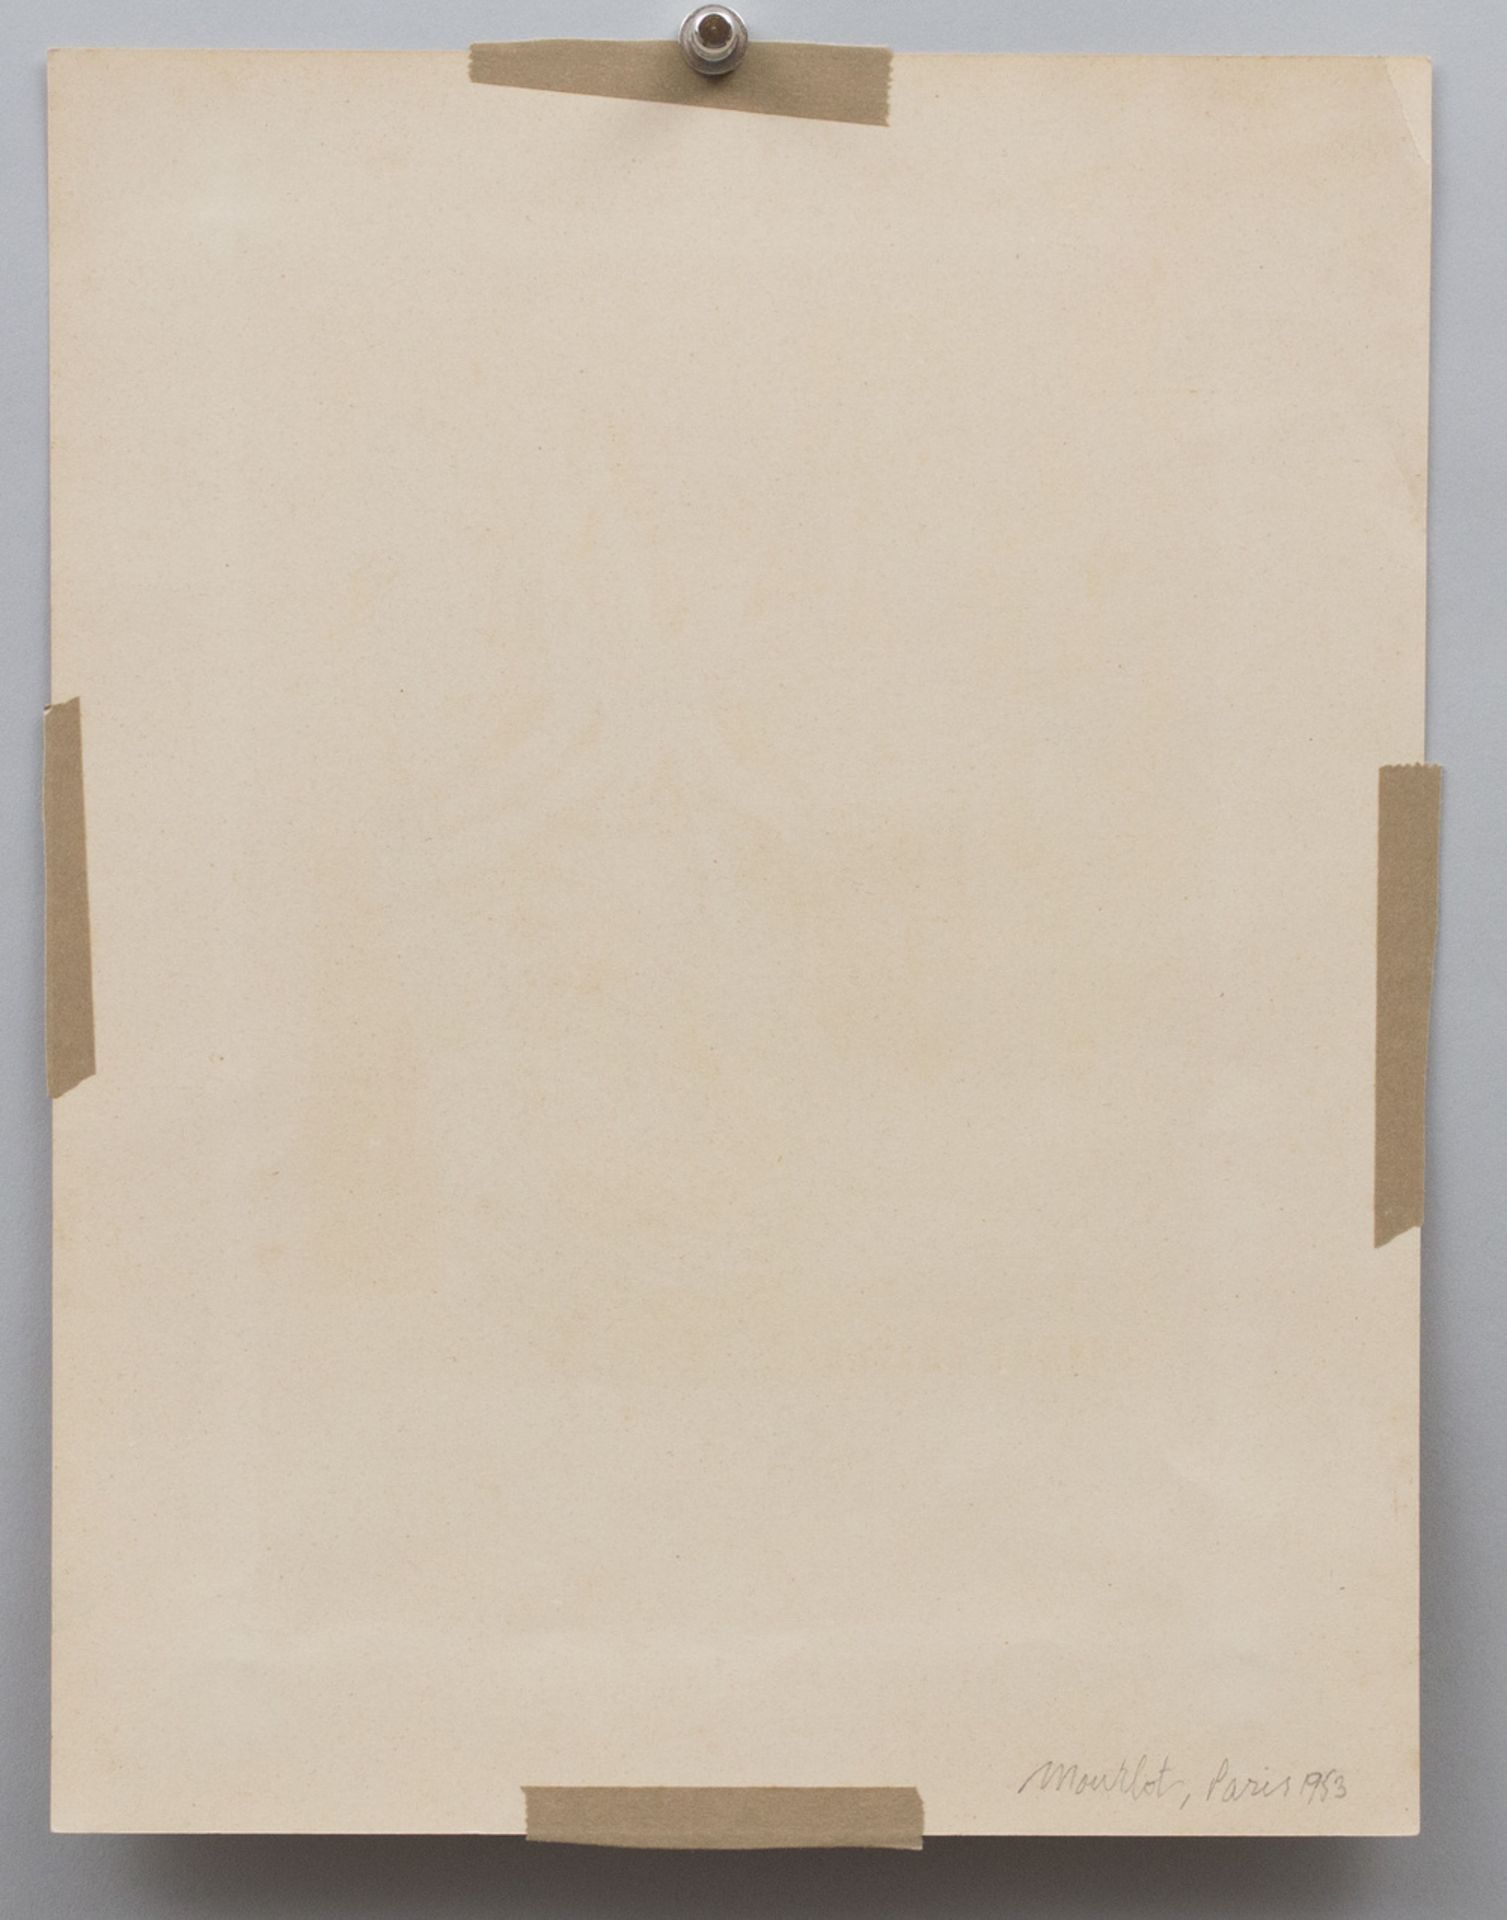 Georges BRAQUE (1882-1963), 'Ausstellungsplakat' / 'Exhibition poster', Berggruen & Cie, 1953 - Image 3 of 3